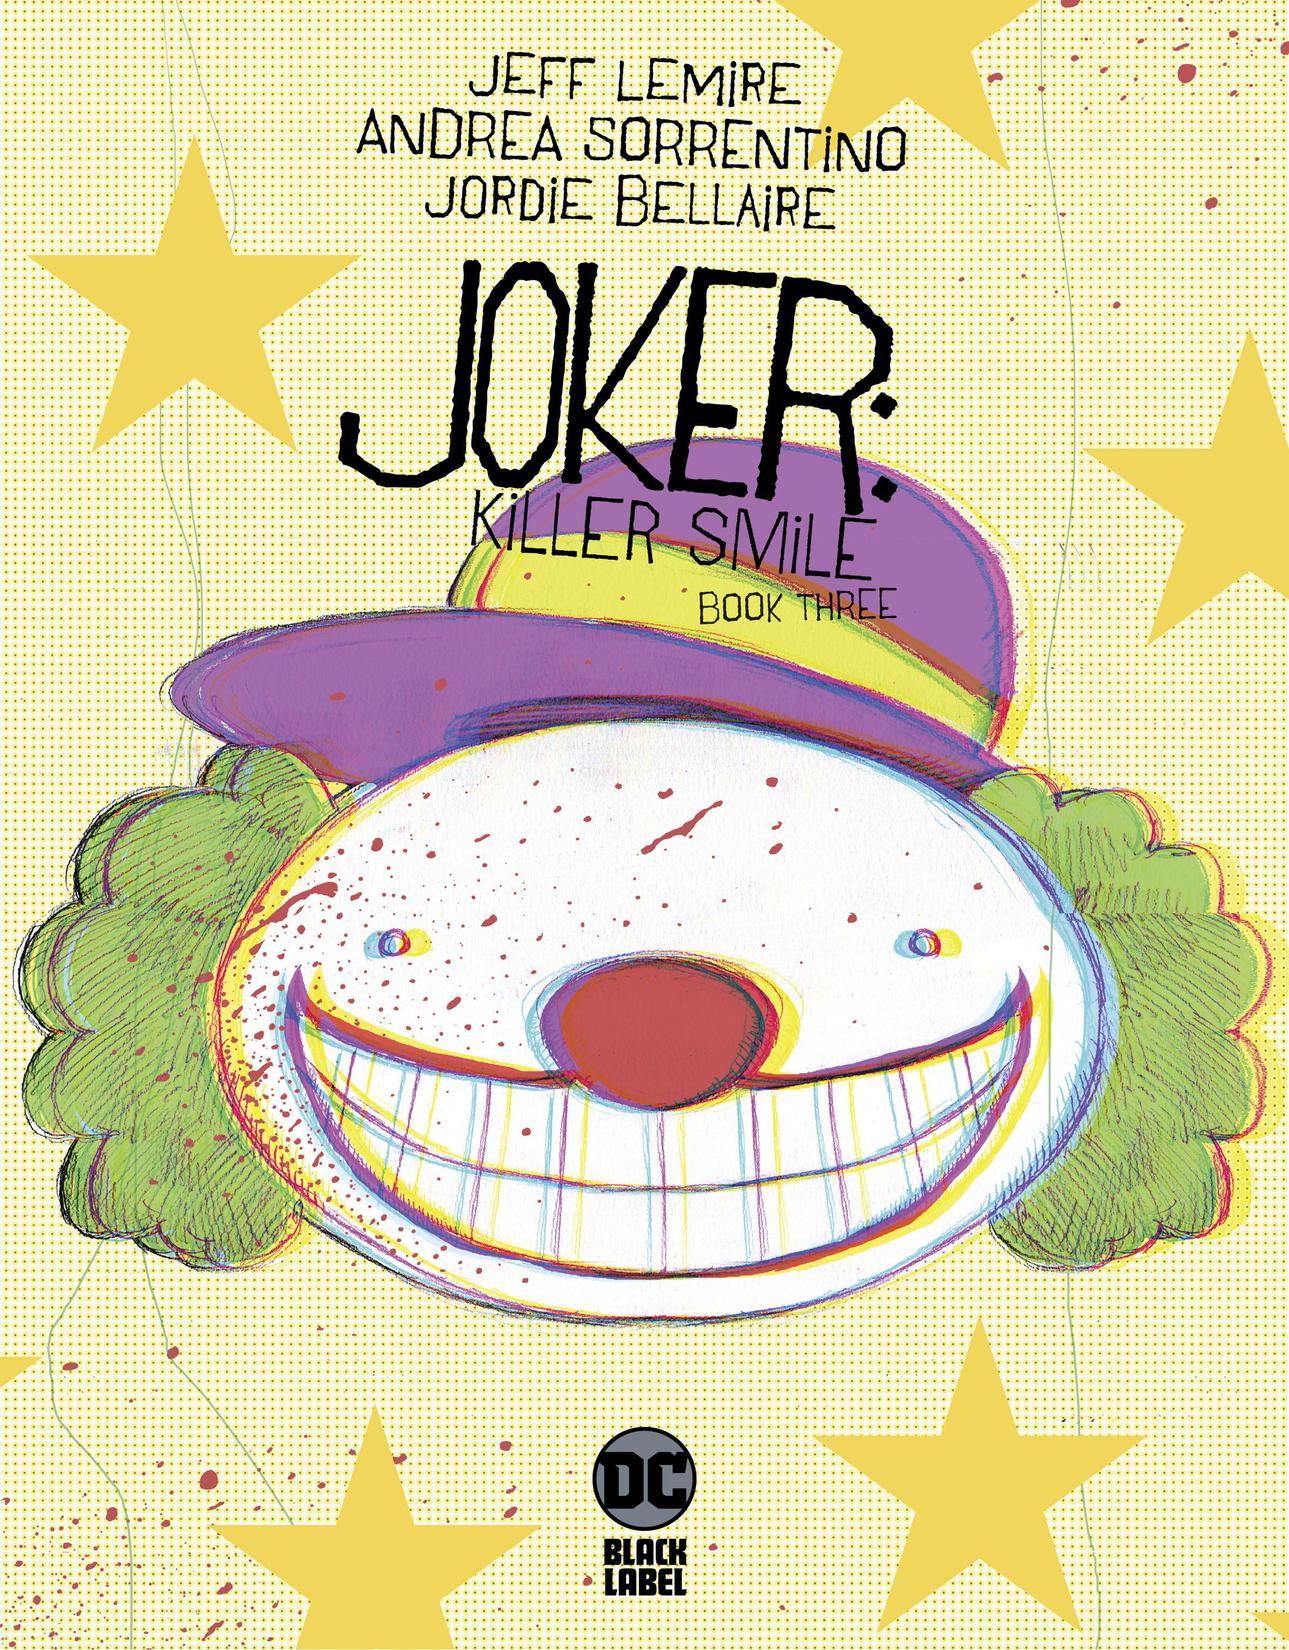 Joker: Killer Smile #3 preview images